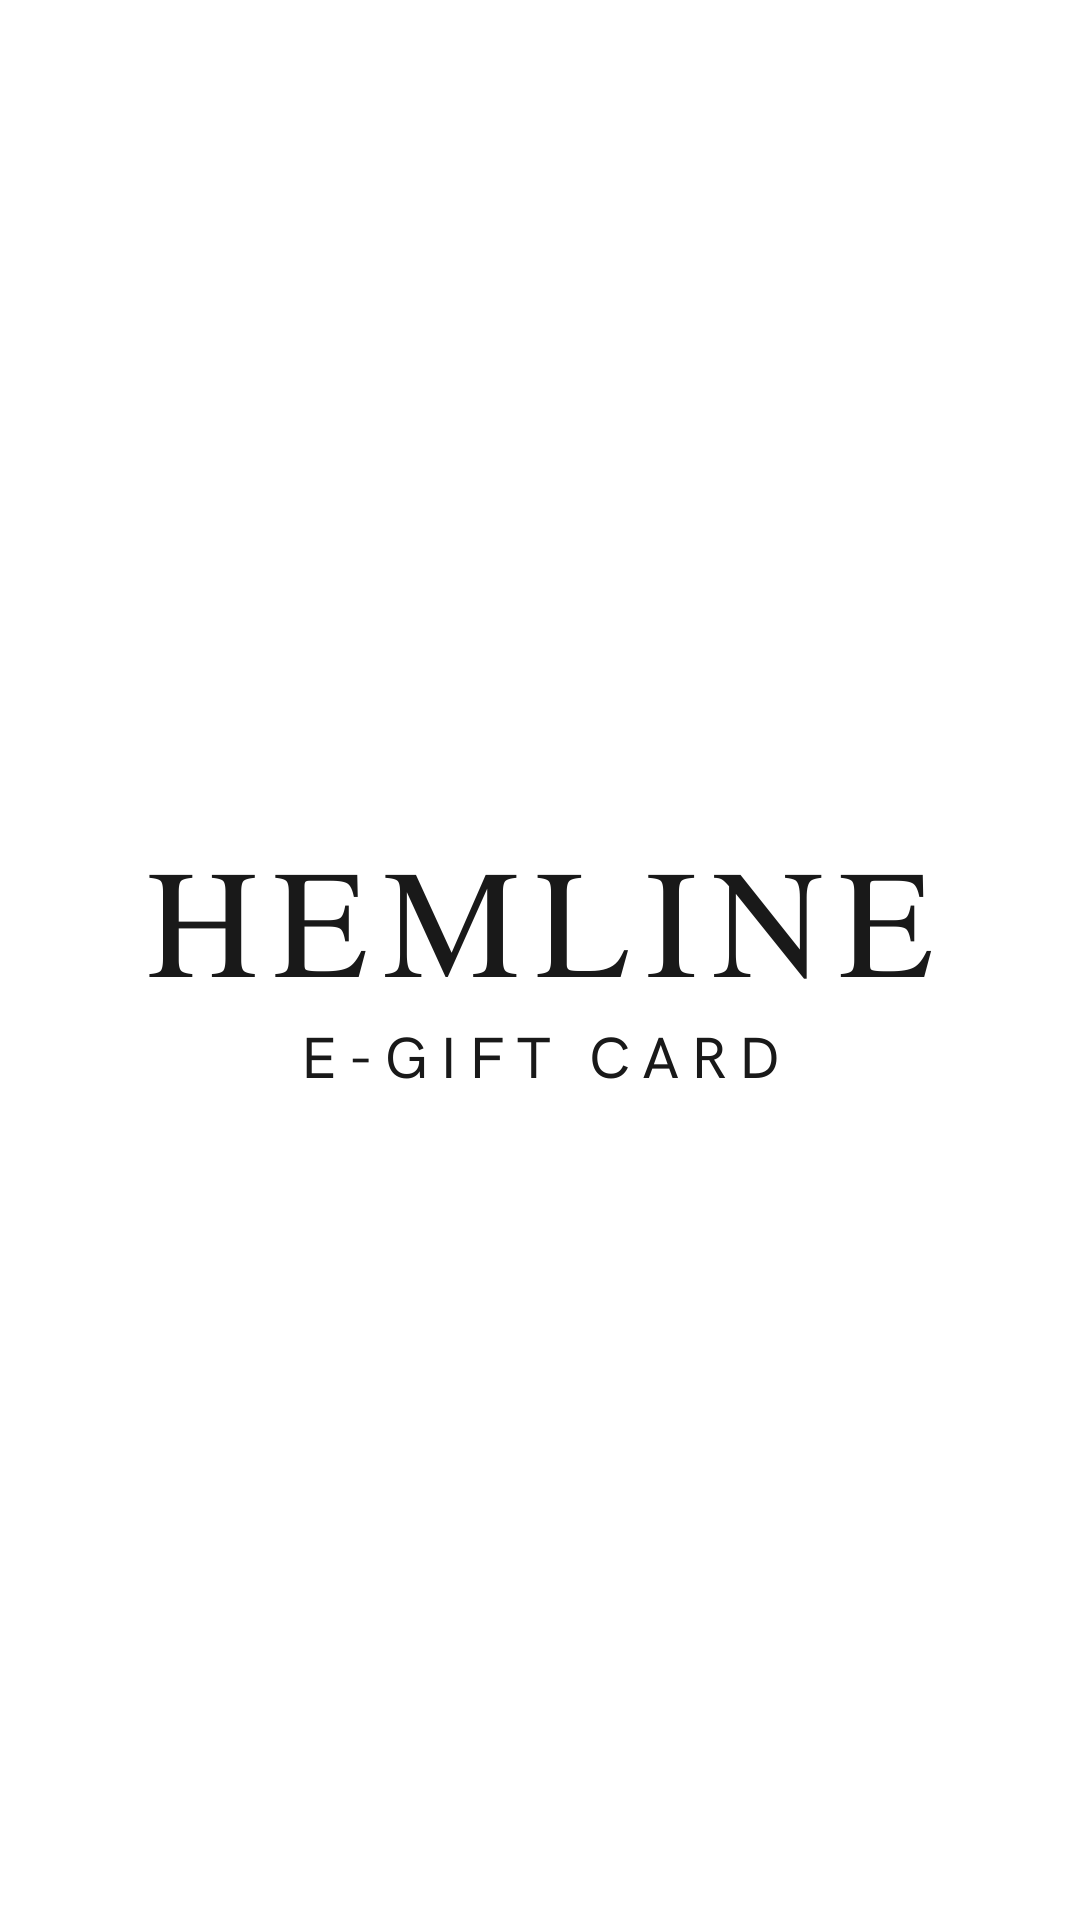 Hemline Highland Road E-Gift Card